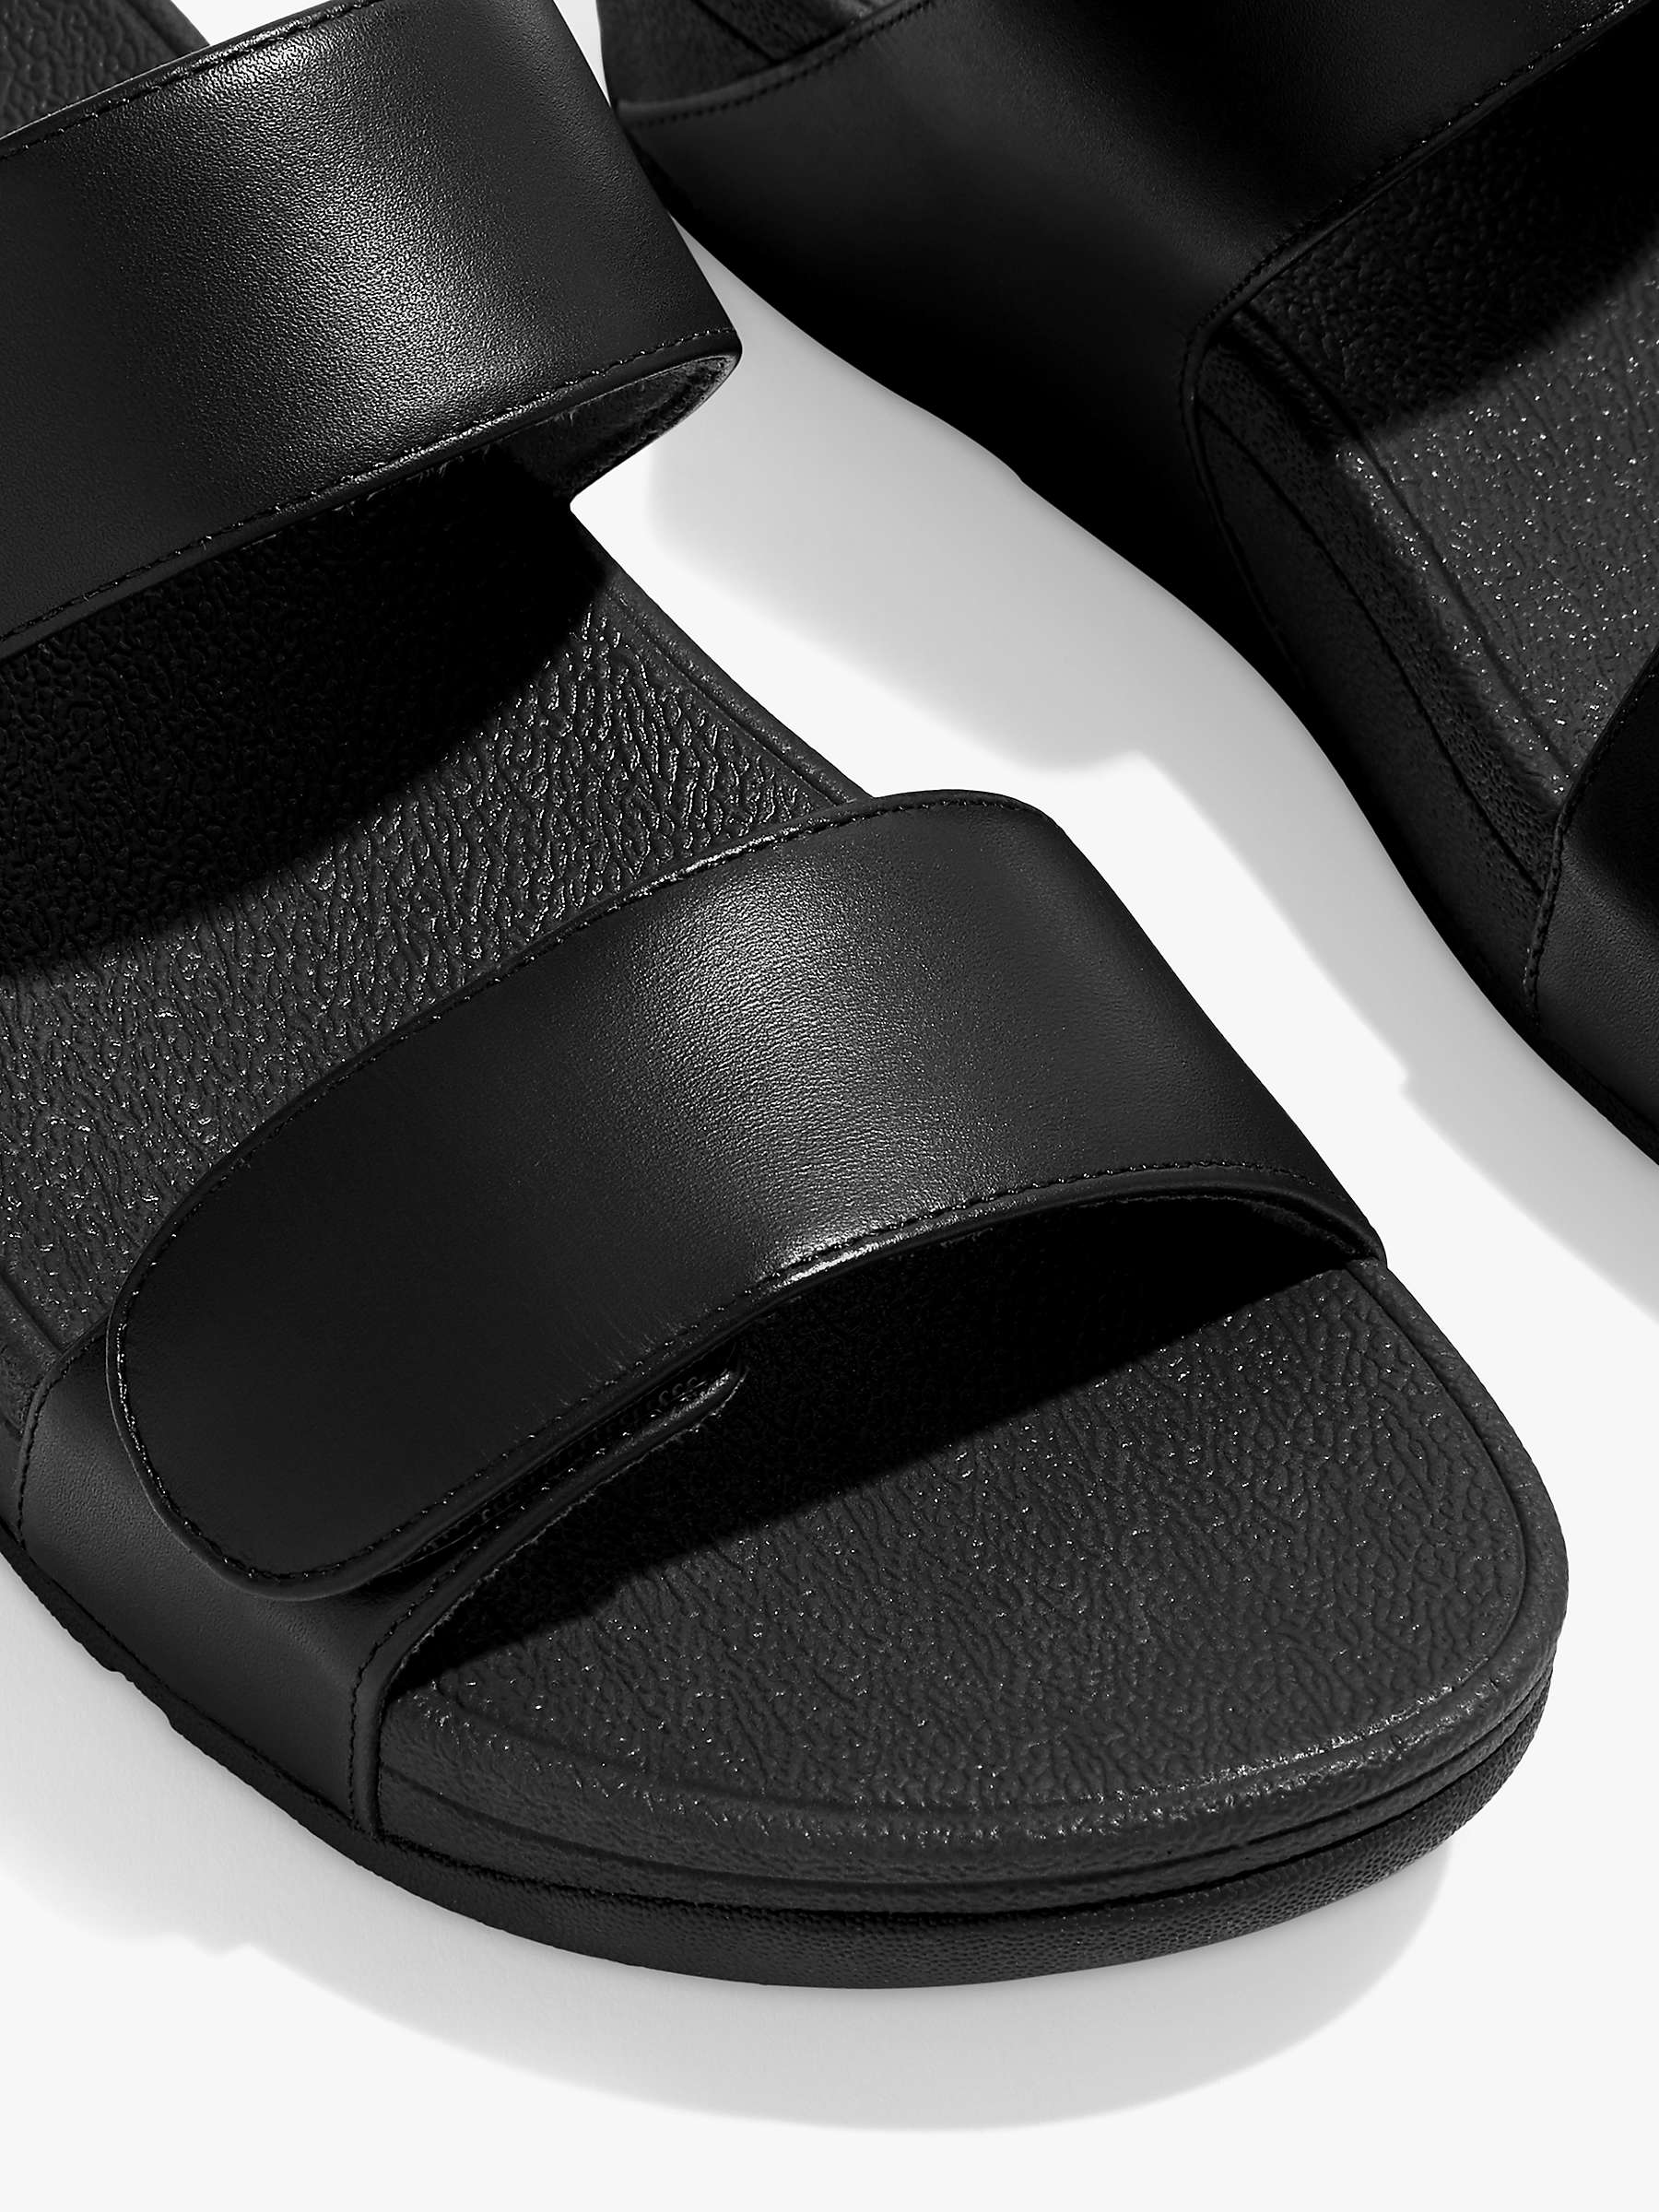 Buy FitFlop Lulu Adjustable Strap Leather Slider Sandals Online at johnlewis.com